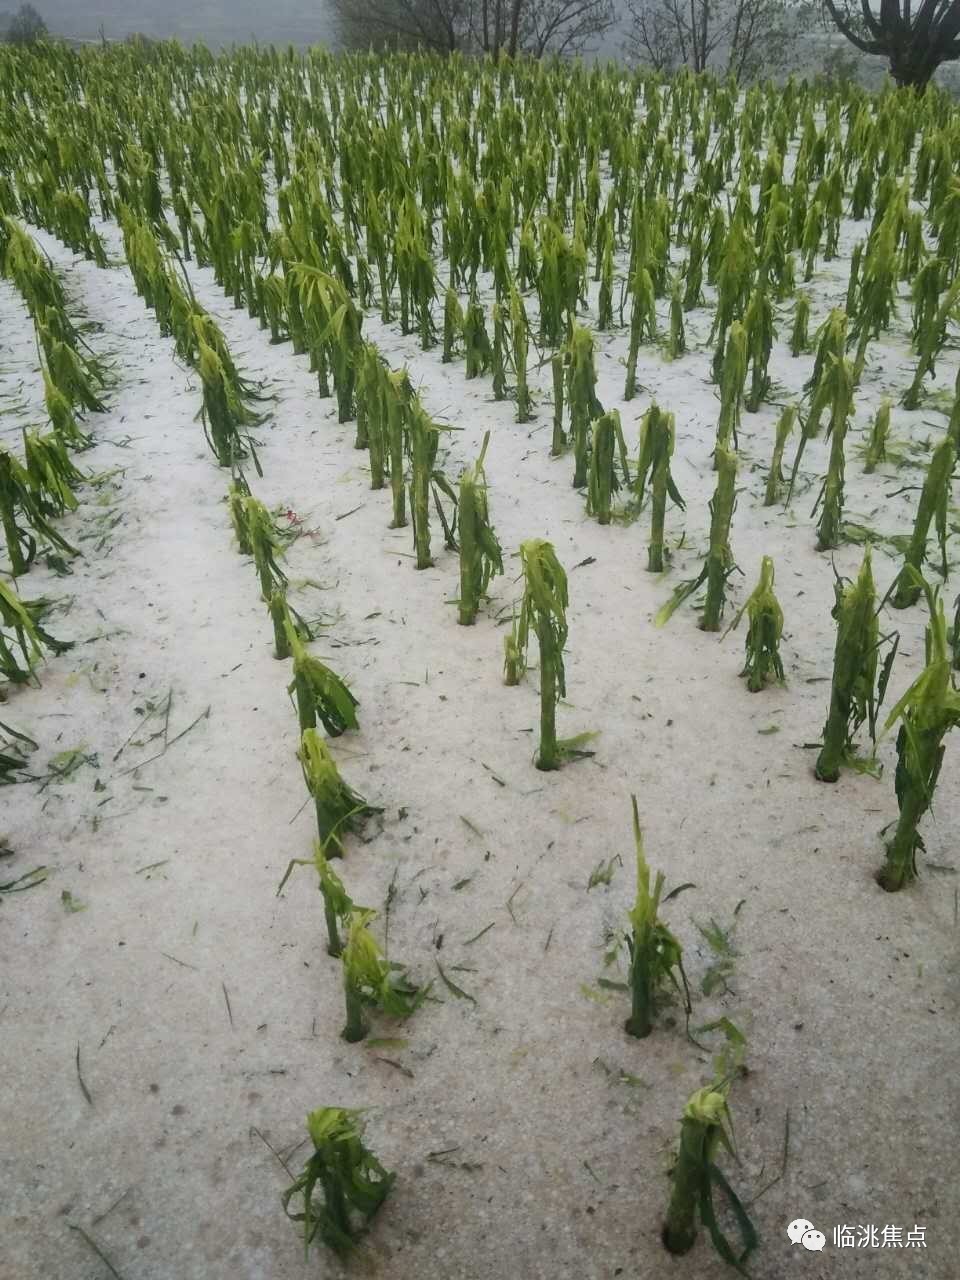 由于短时间恶劣天气的影响,农作物受到了很大的伤害.